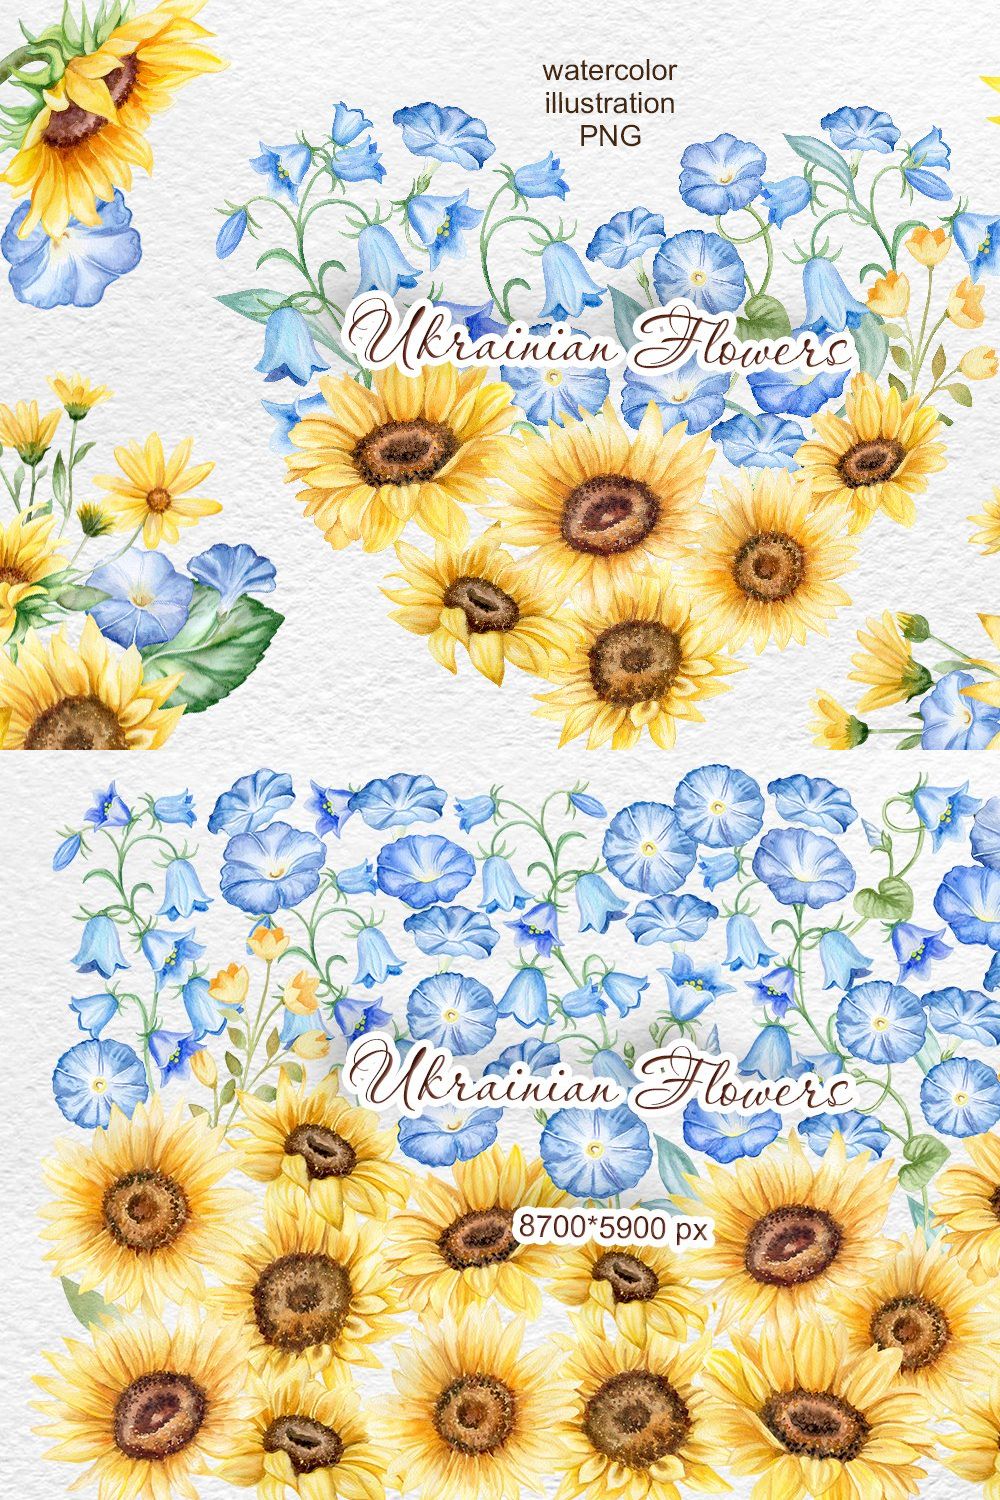 Ukraine watercolor flowers clipart pinterest preview image.